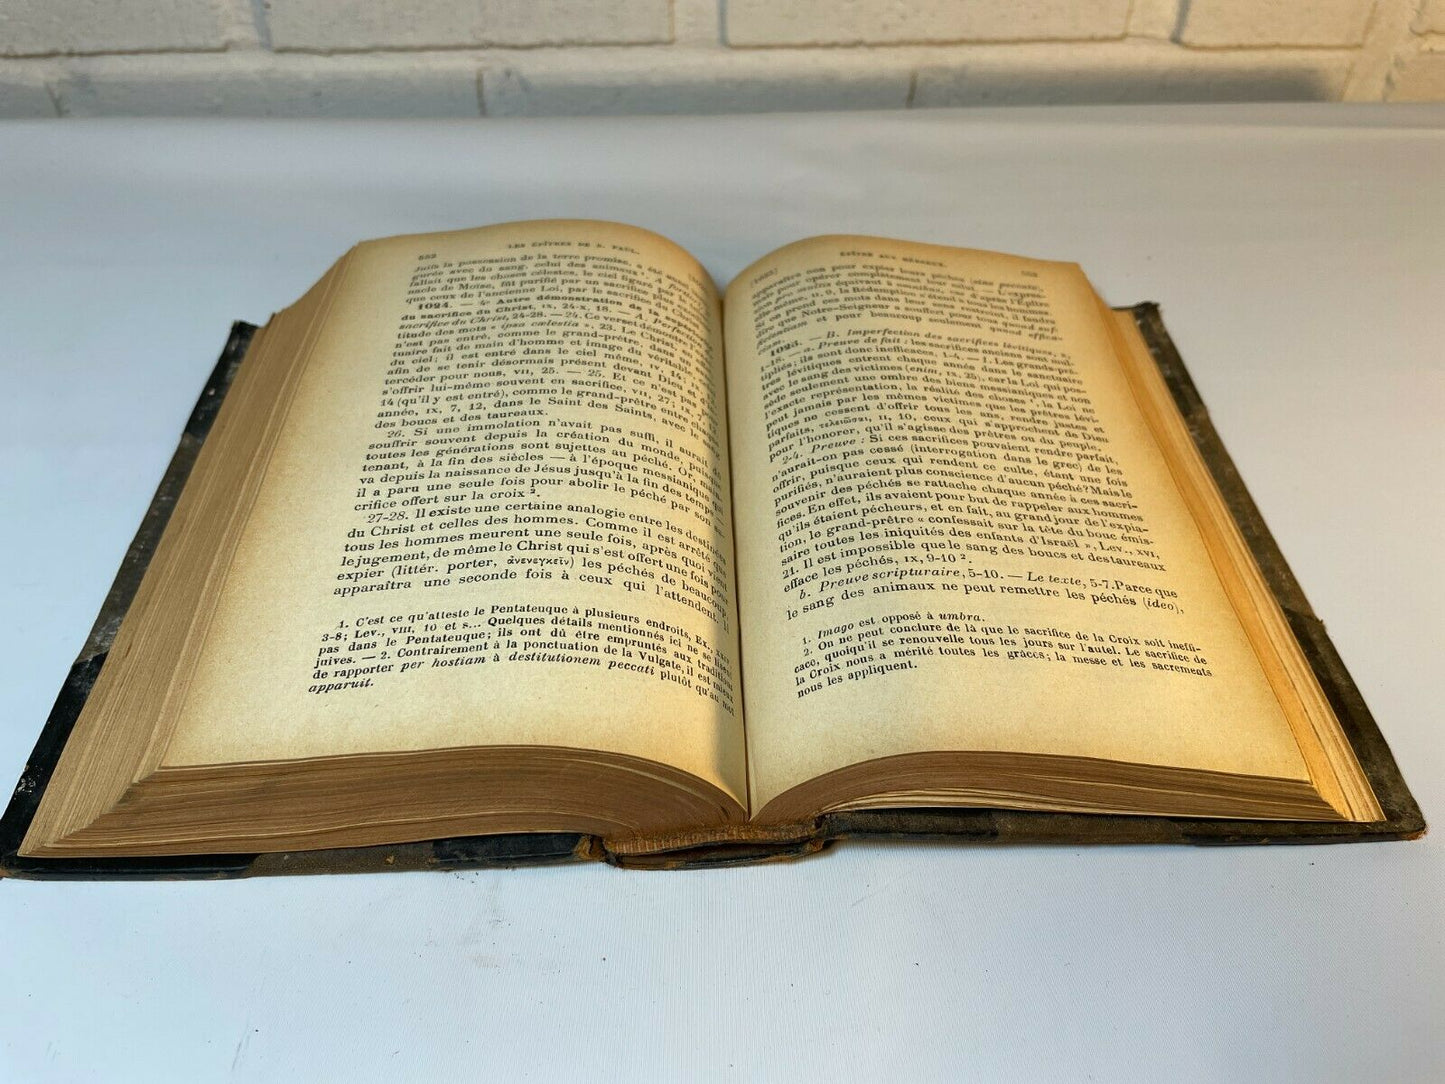 Manuel Biblique Vol.IV Nouveau Testament, Paris (1916) Les. Epitres, L'Apocalyps